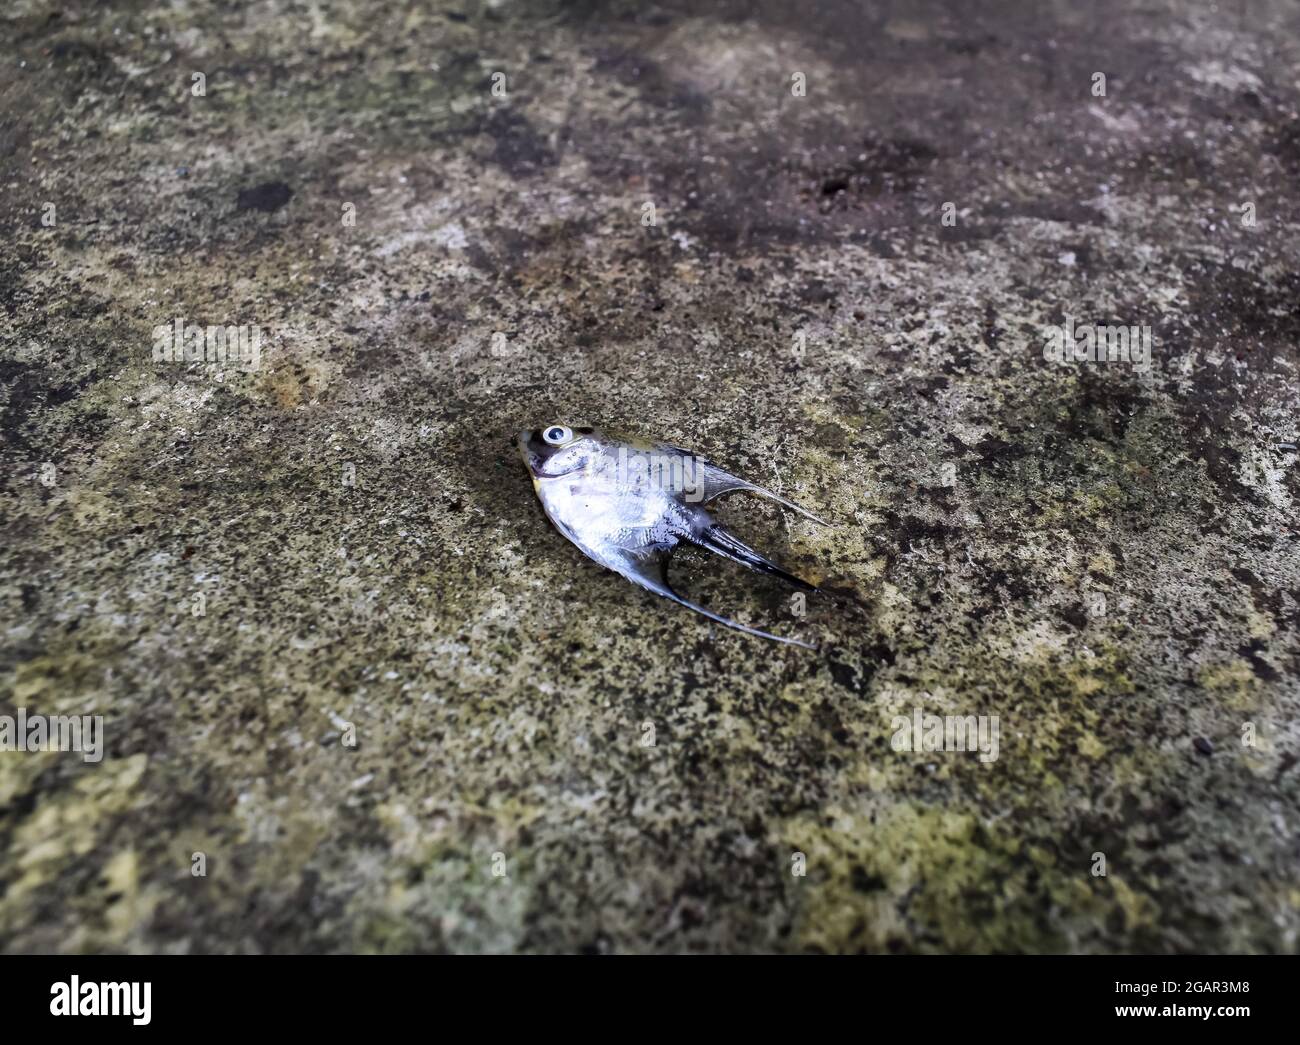 El pez ángel de mármol dorado murió debido al choque de agua. Peces pequeños muertos en el suelo. Vista lateral Foto de stock